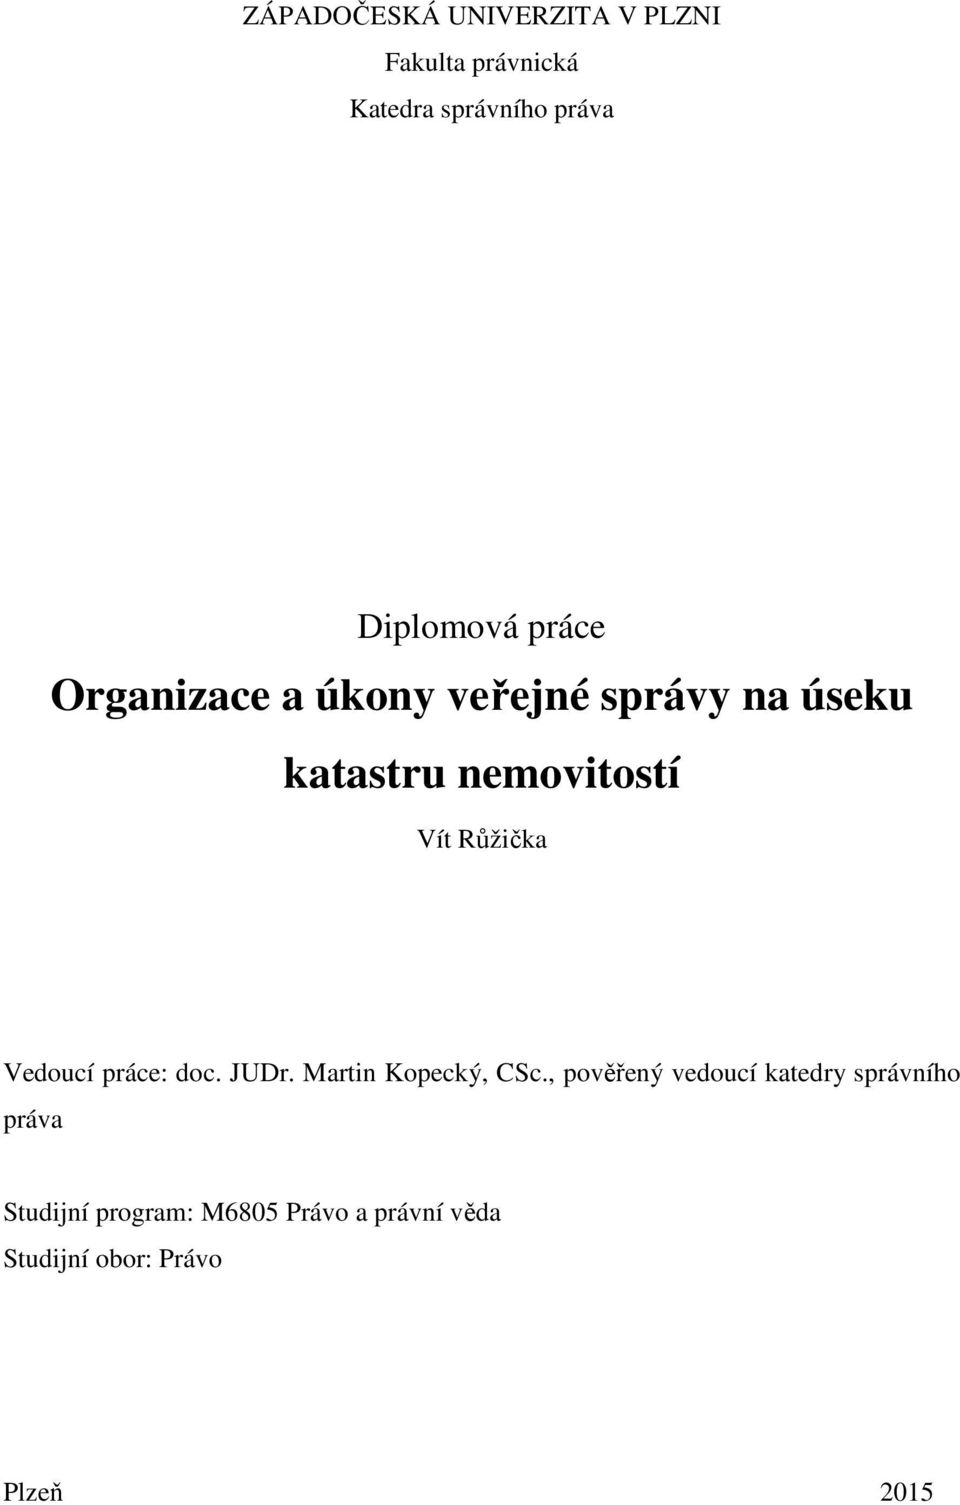 Vedoucí práce: doc. JUDr. Martin Kopecký, CSc.